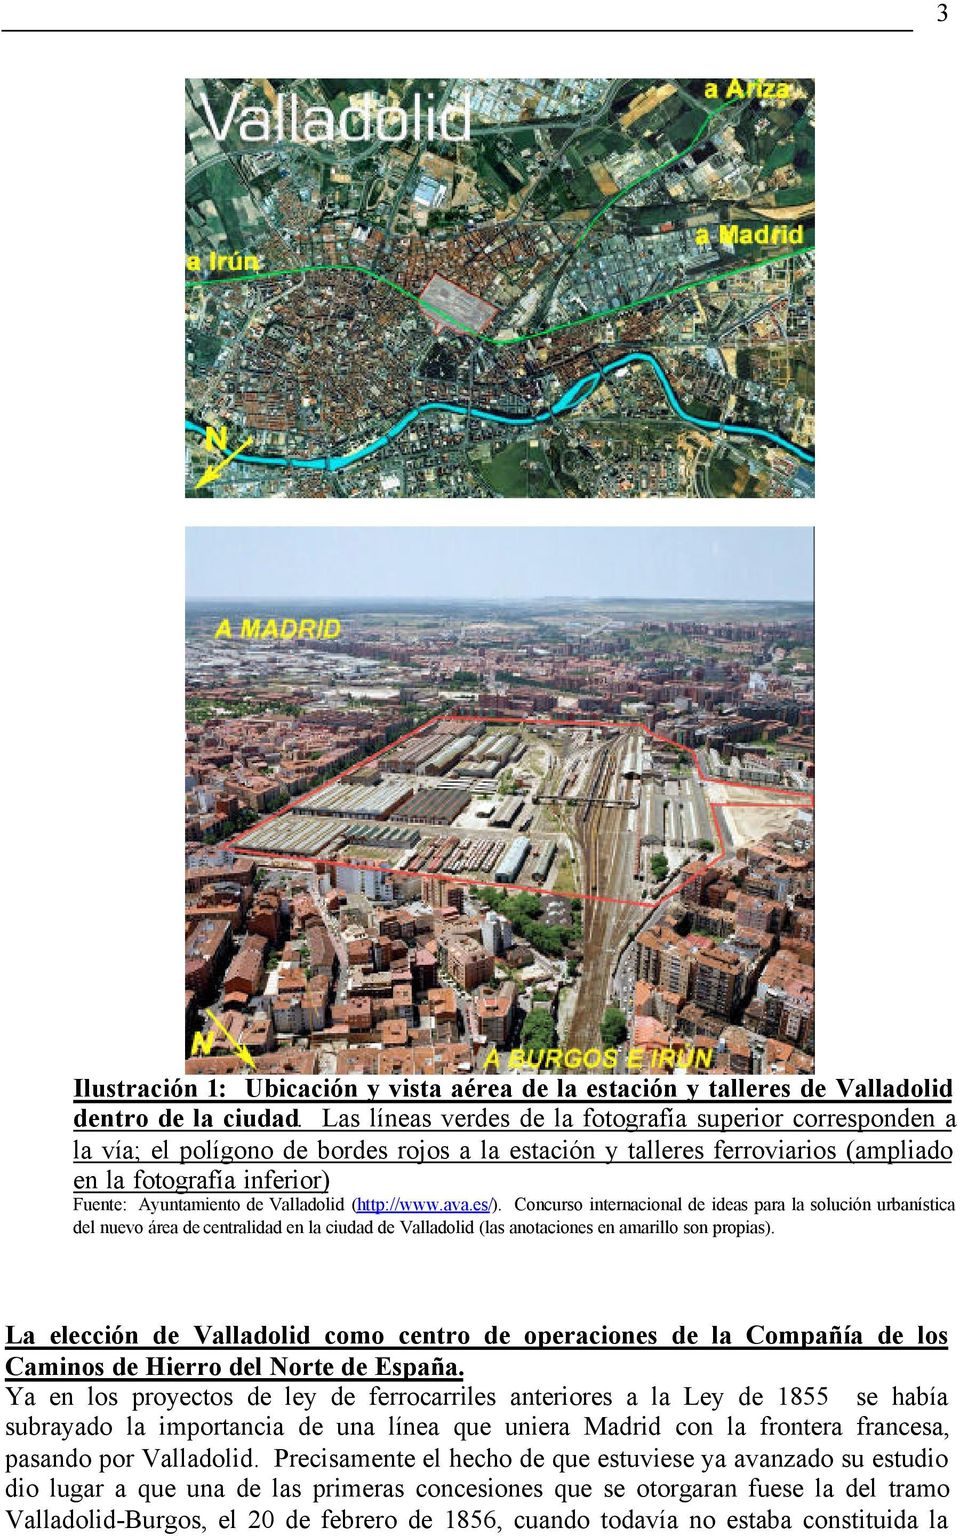 Valladolid (http://www.ava.es/). Concurso internacional de ideas para la solución urbanística del nuevo área de centralidad en la ciudad de Valladolid (las anotaciones en amarillo son propias).